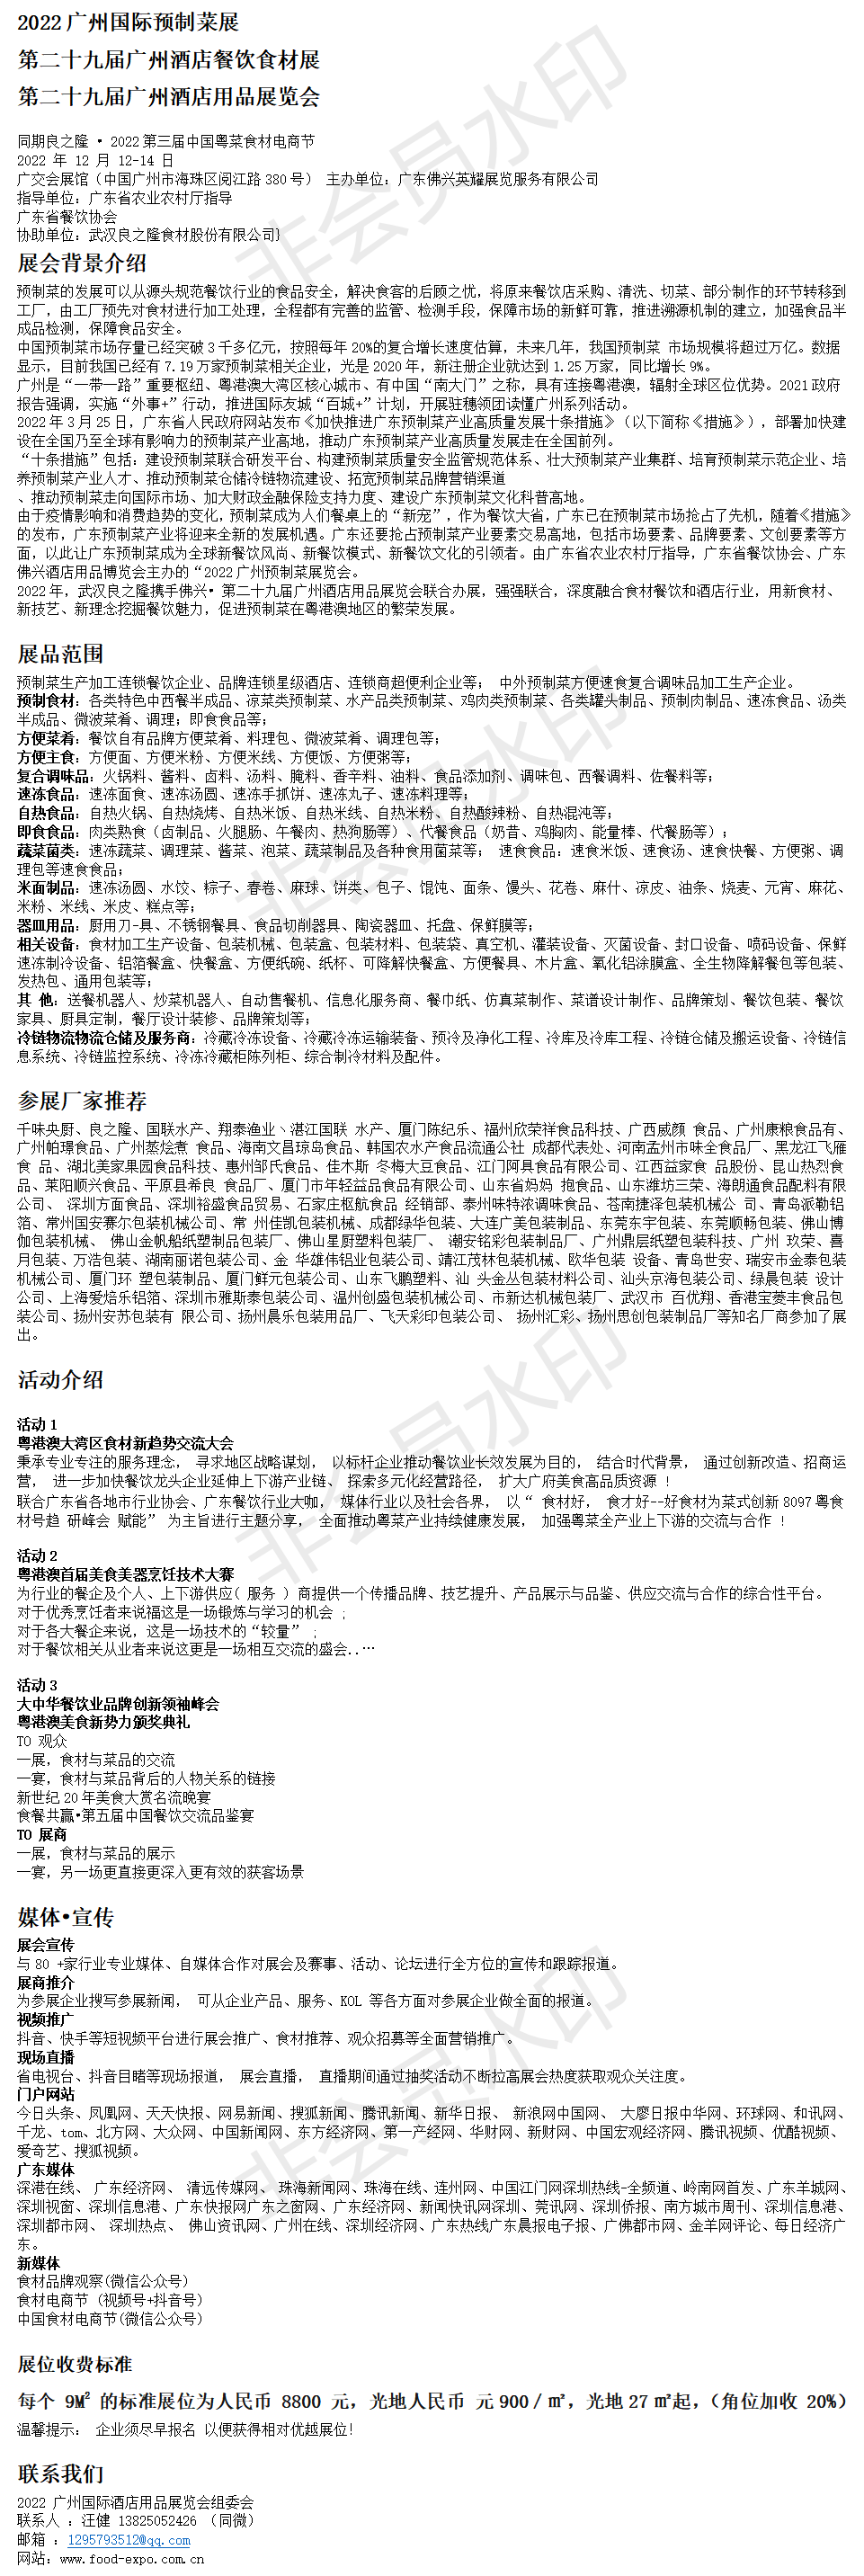 首页_2022广州国际预制菜展